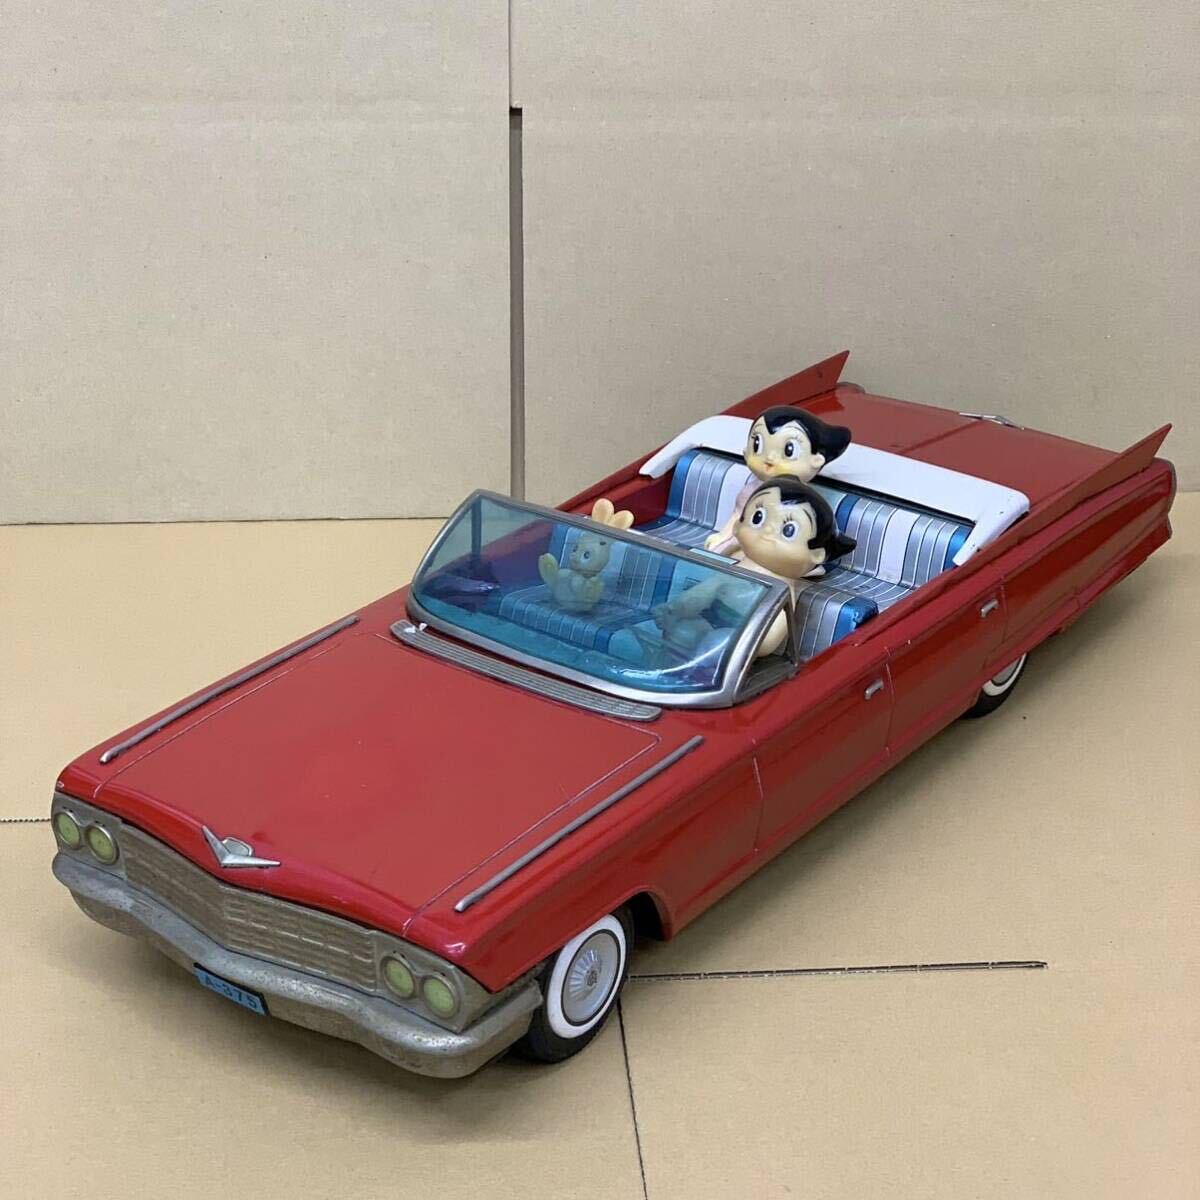  Yonezawa игрушки Astro Boy новый Cadillac жестяная пластина sofvi Vintage подлинная вещь Ёнэдзава игрушка большой жестяная пластина машина примерно 55cm